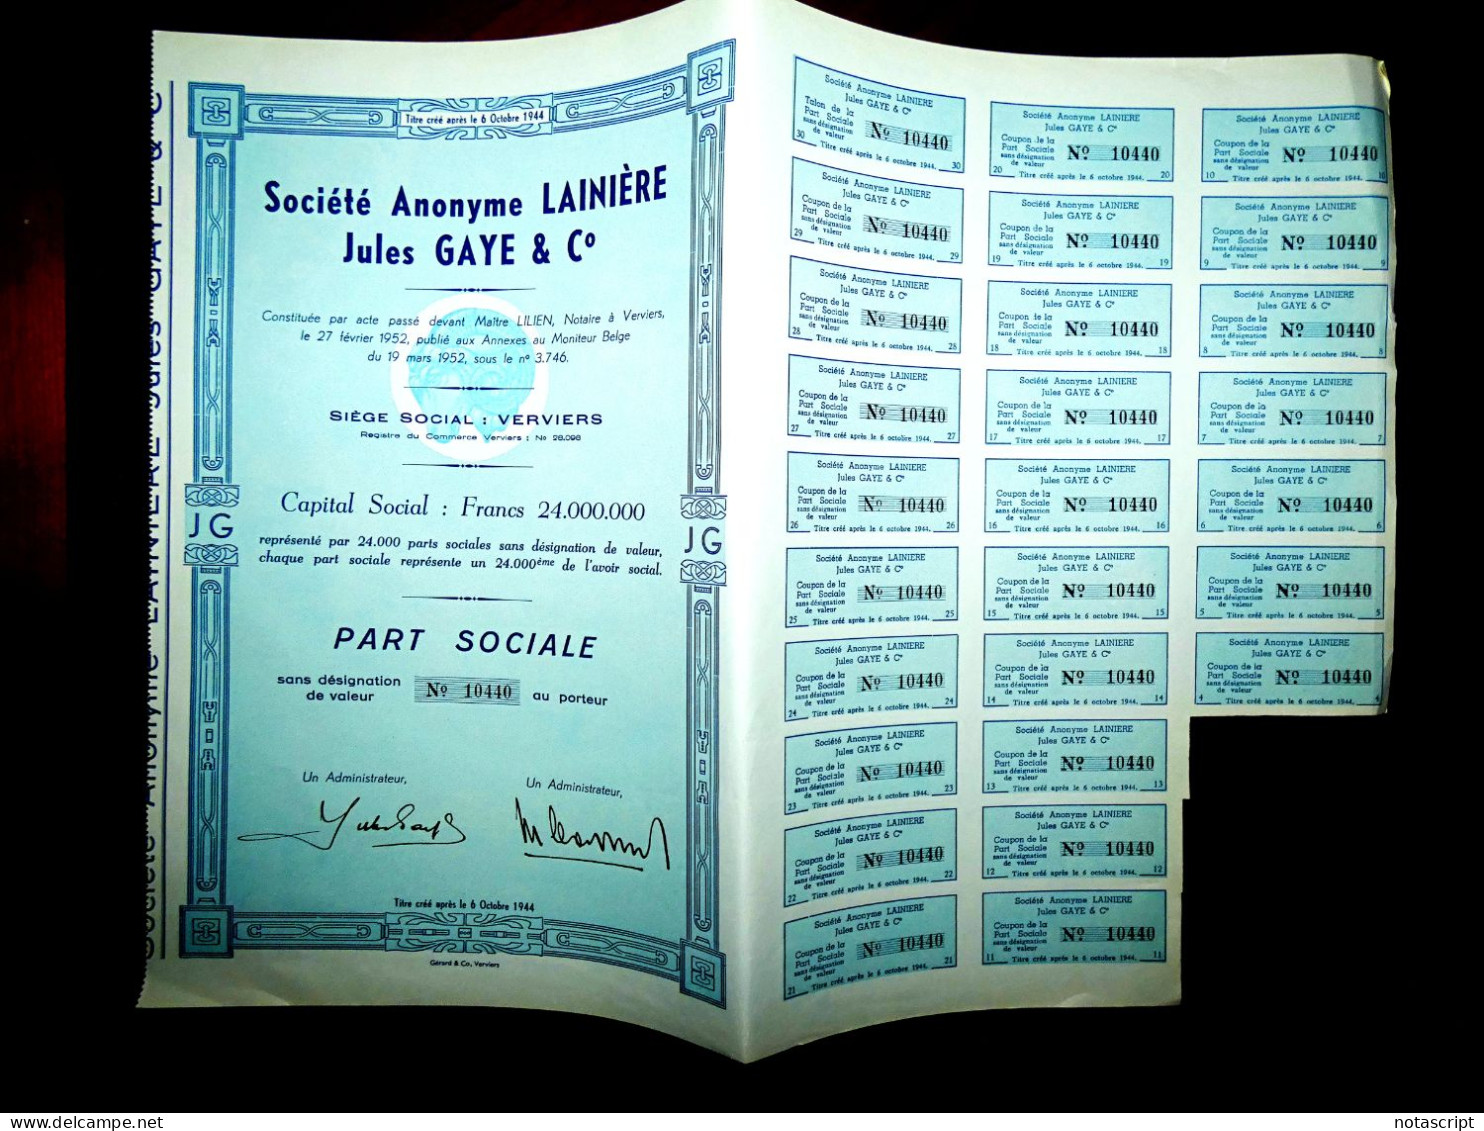 Société A,Lainière Jules Gaye & Co Verviers ,1952, Belgium Share Certificate - Tessili